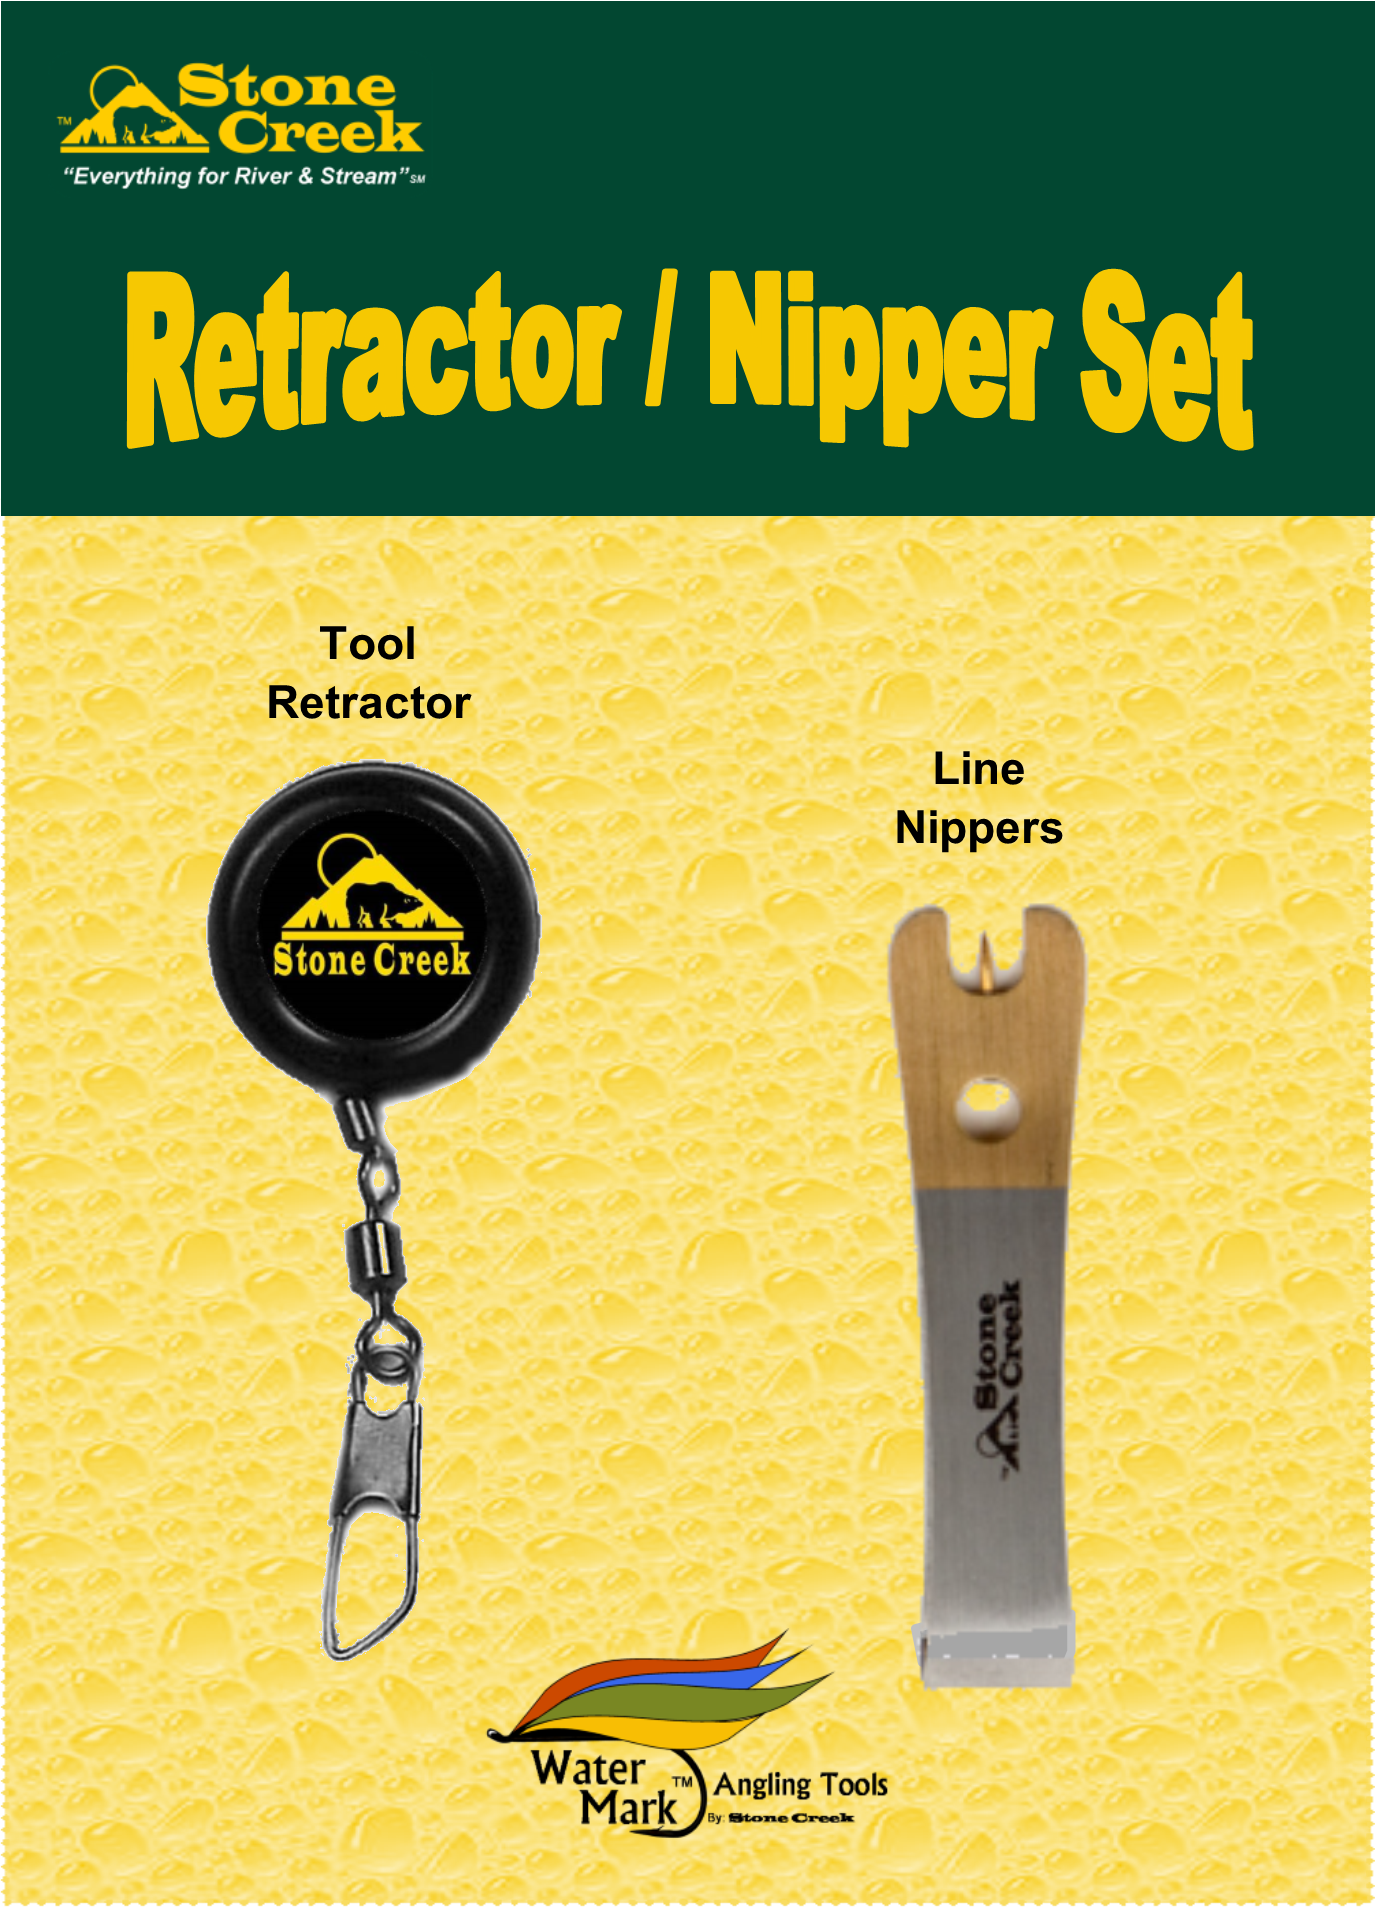 Retractor / Nipper Sets